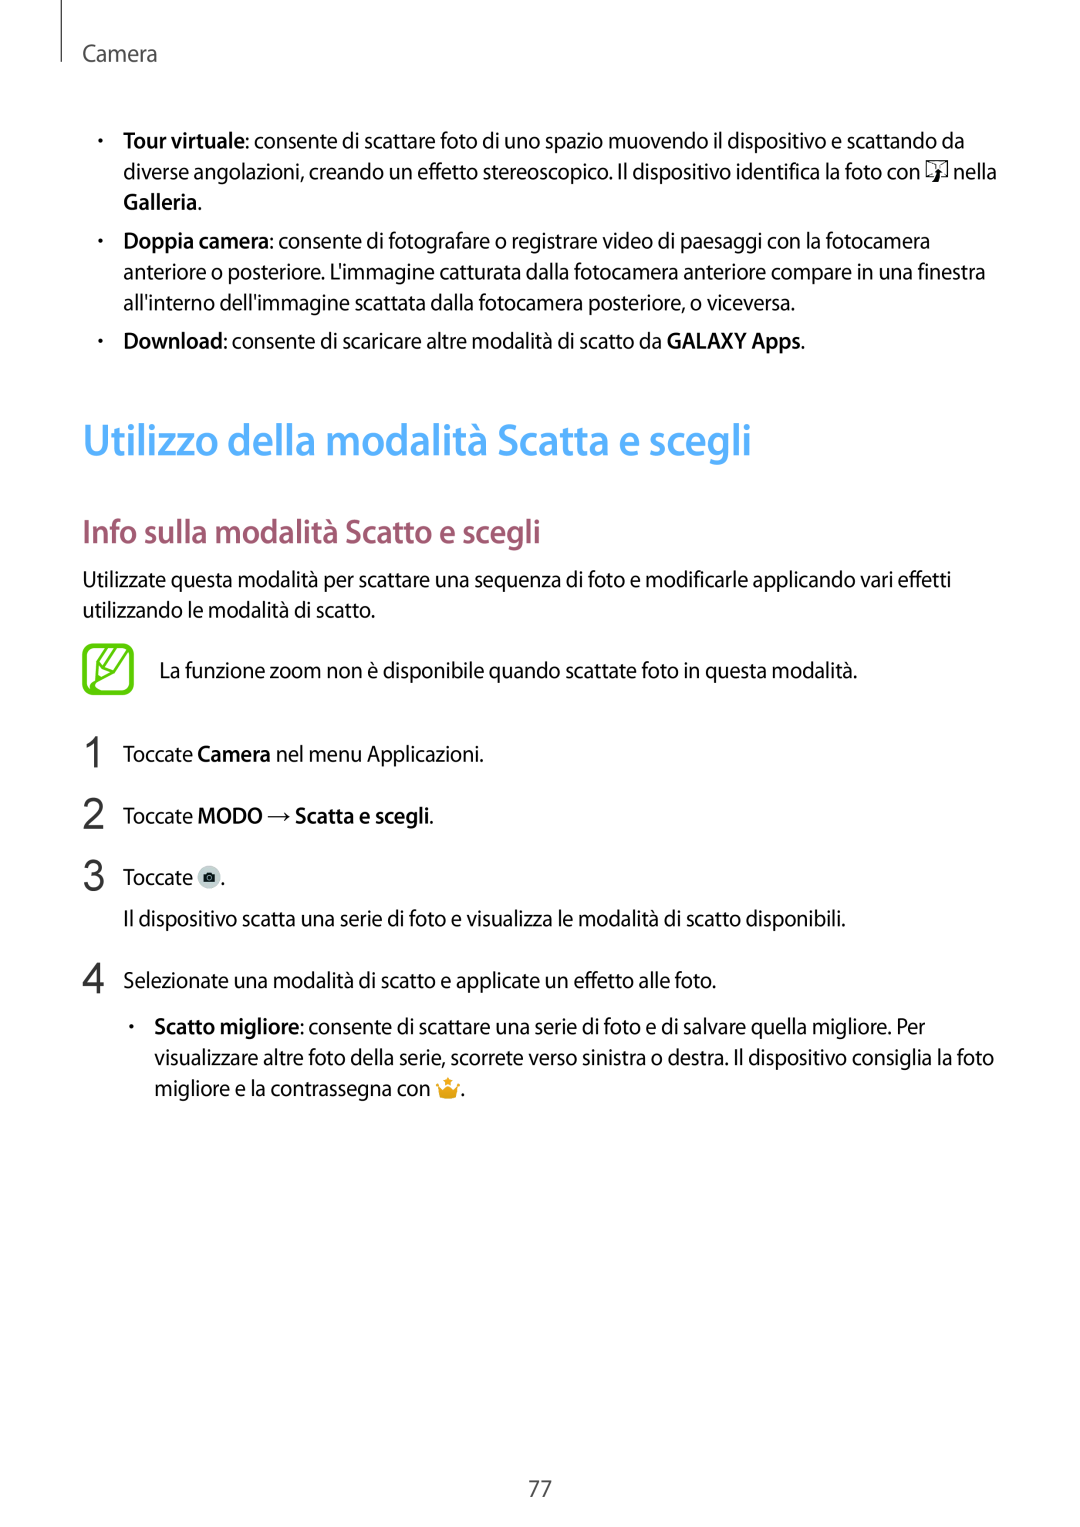 Samsung SM-G900FZKAHUI manual Utilizzo della modalità Scatta e scegli, Info sulla modalità Scatto e scegli, Camera 